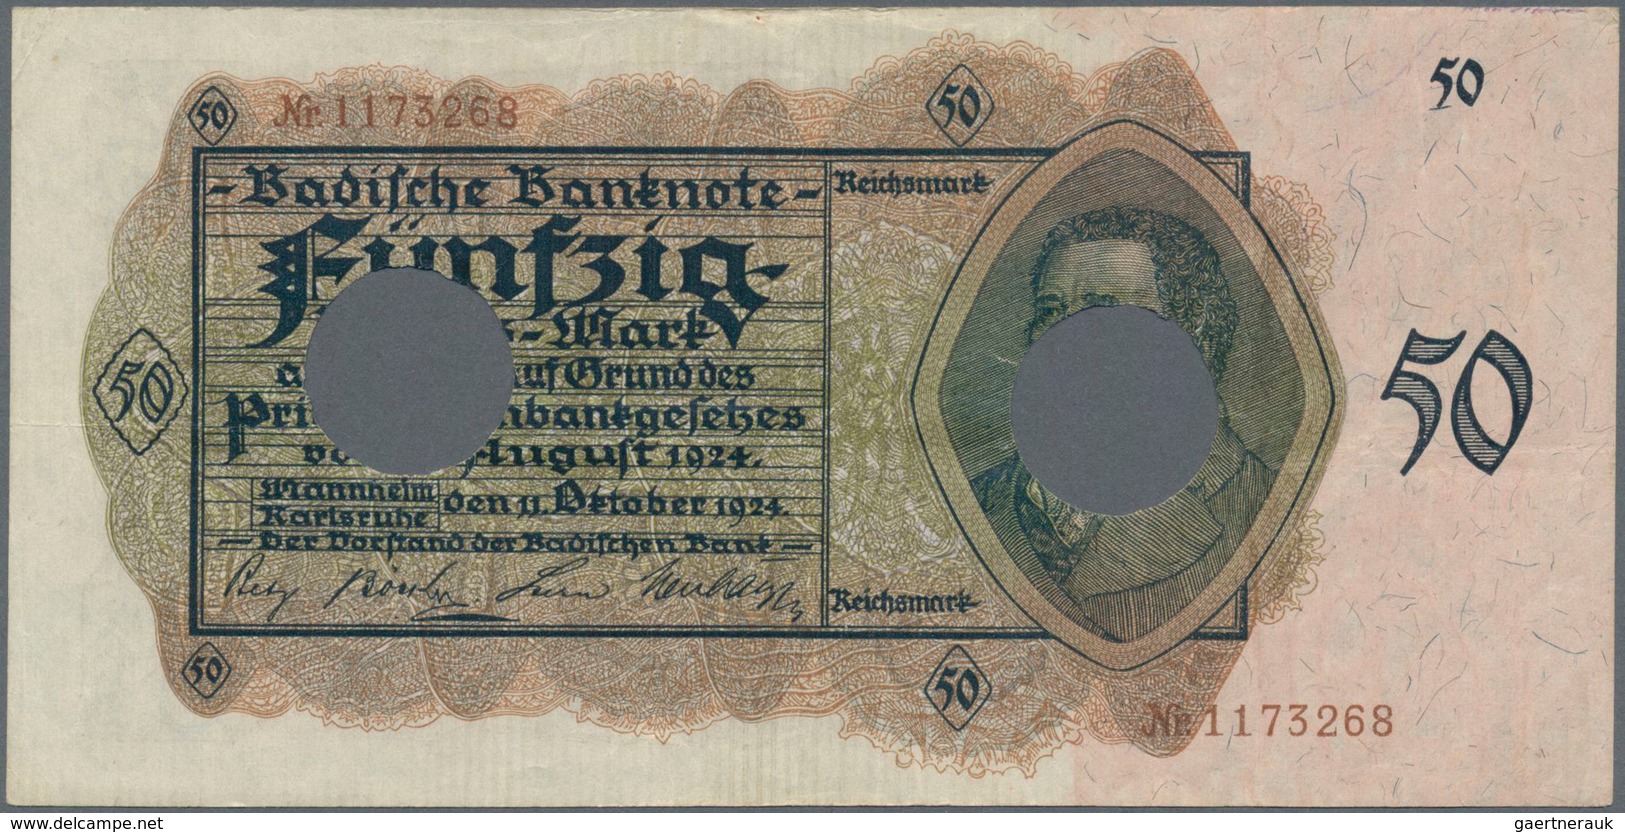 Deutschland: Deutschland mit Nebengebieten, hochwertige Sammlung von ca. 436 Banknoten, dabei enthal